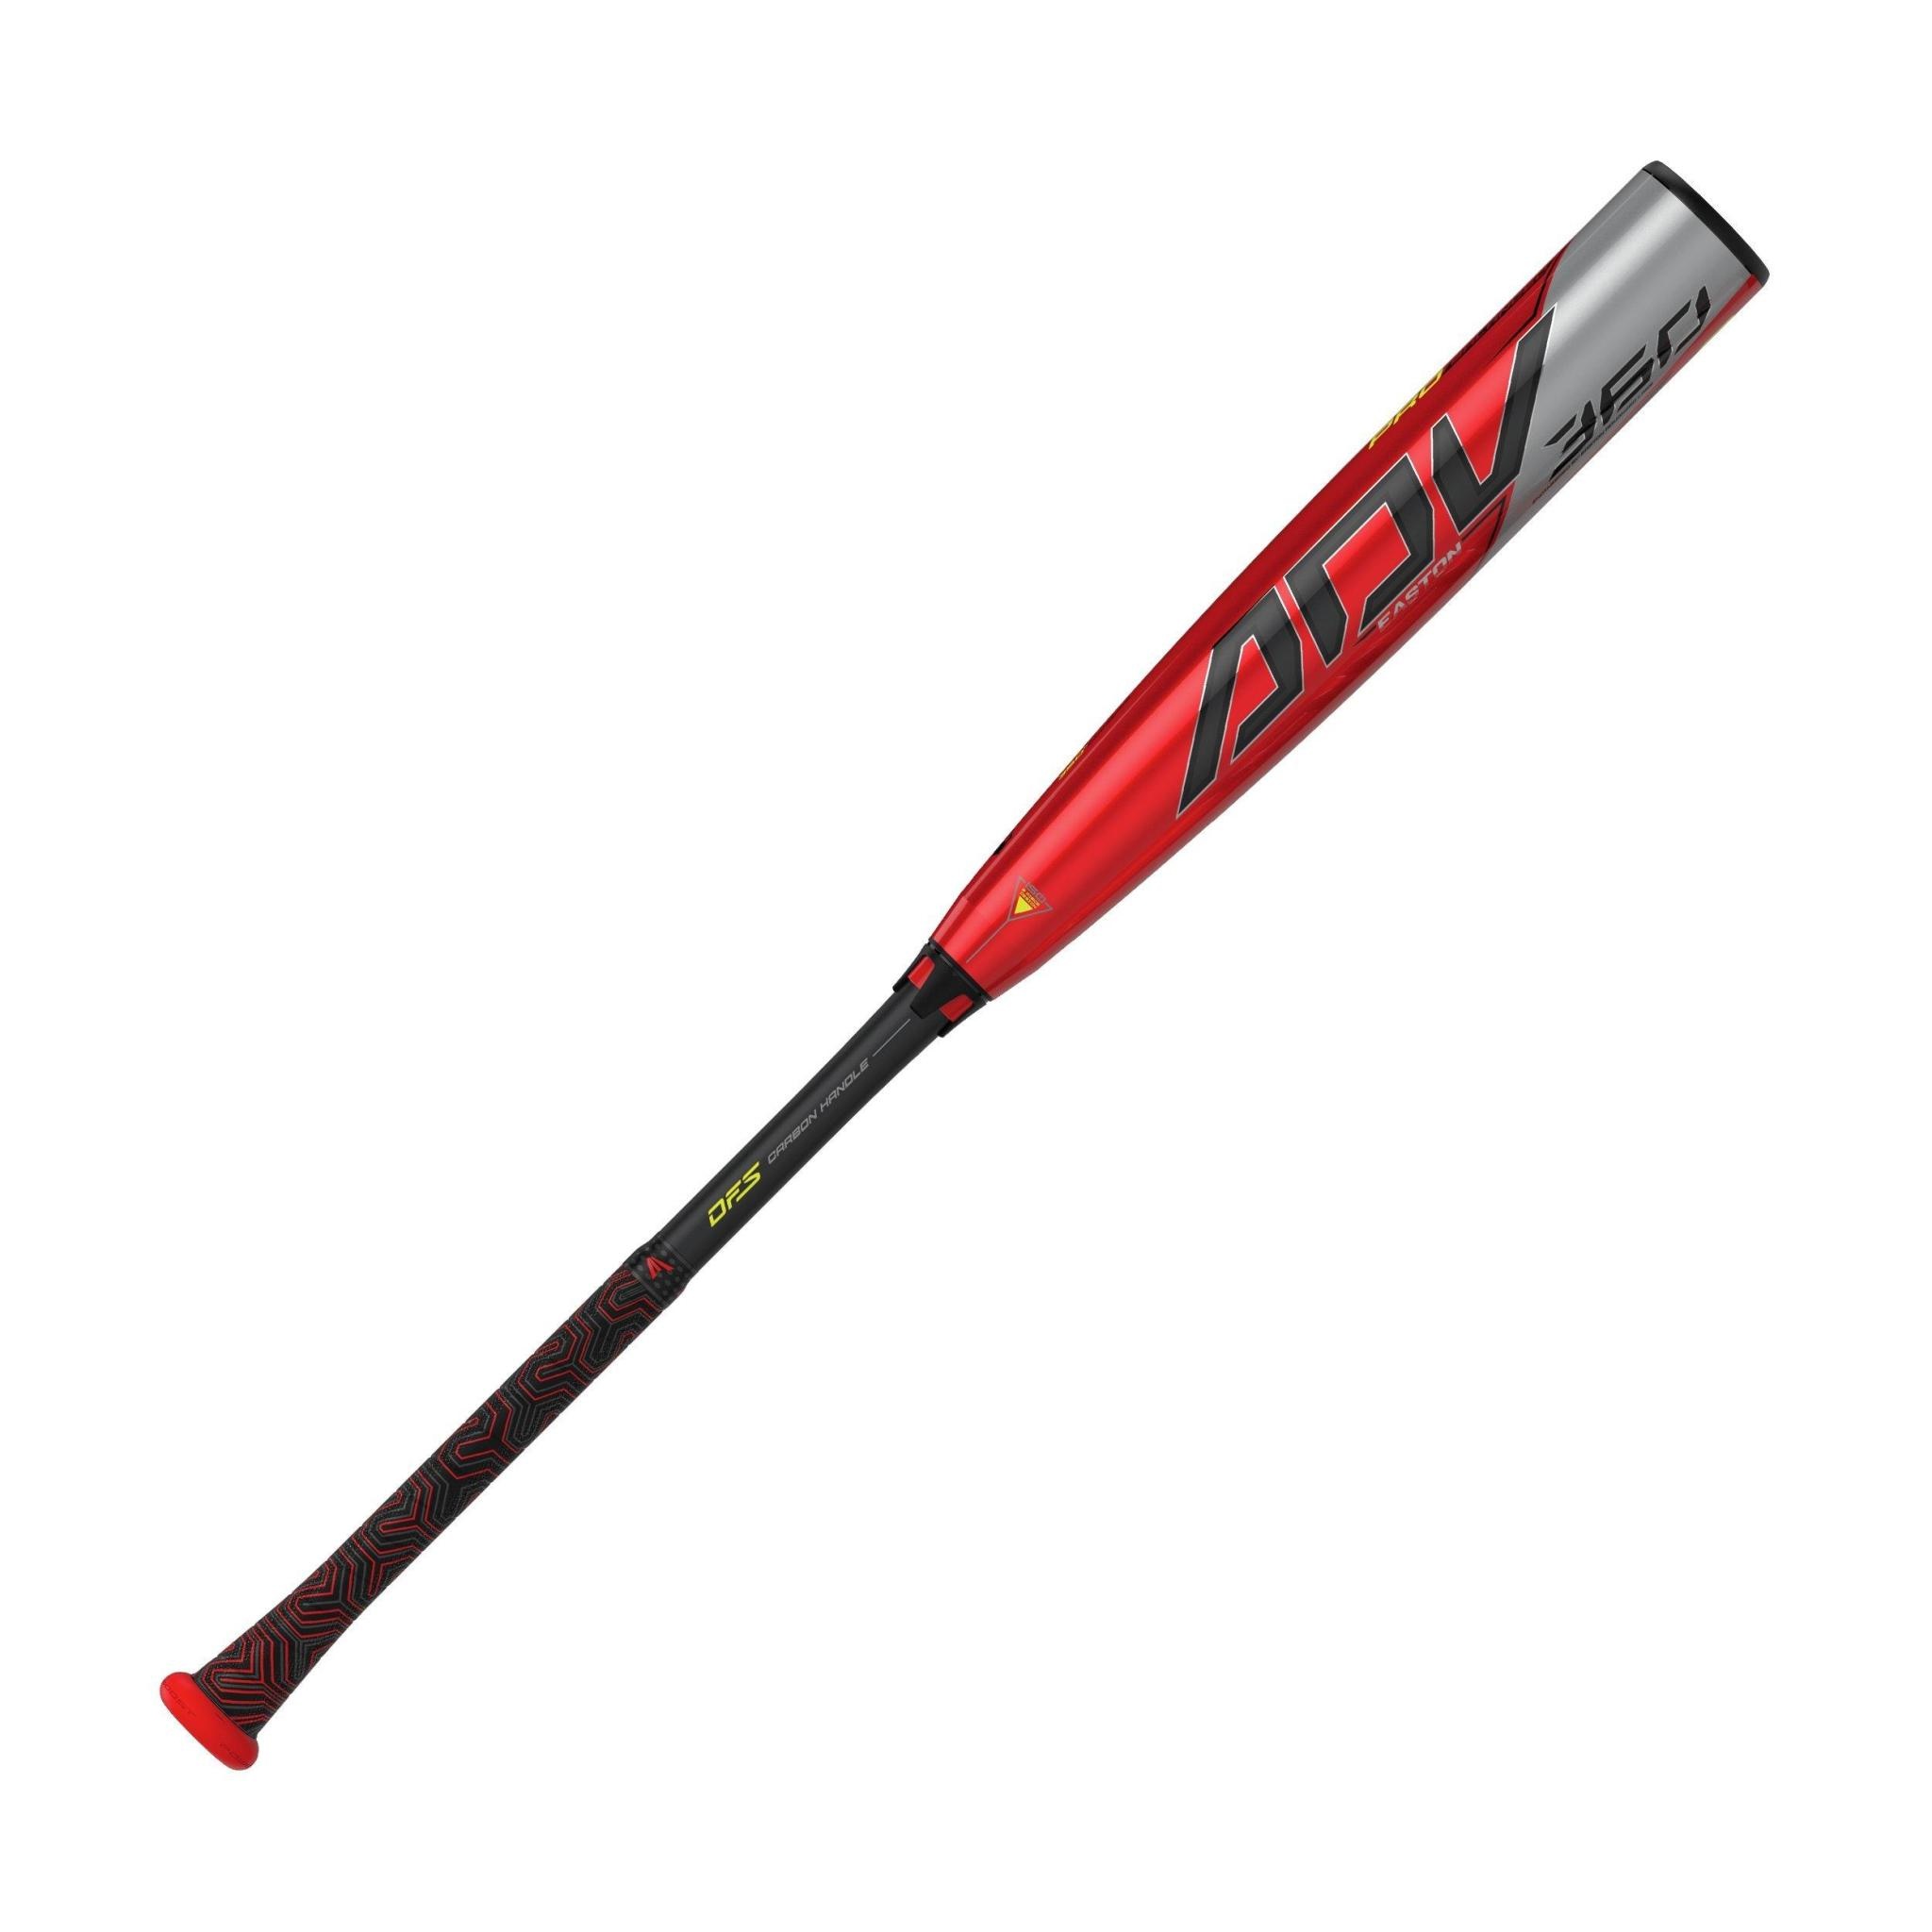 Easton 2020 ADV 360 -3 BB20ADV BBCOR 2-piece pro balanced composite bat